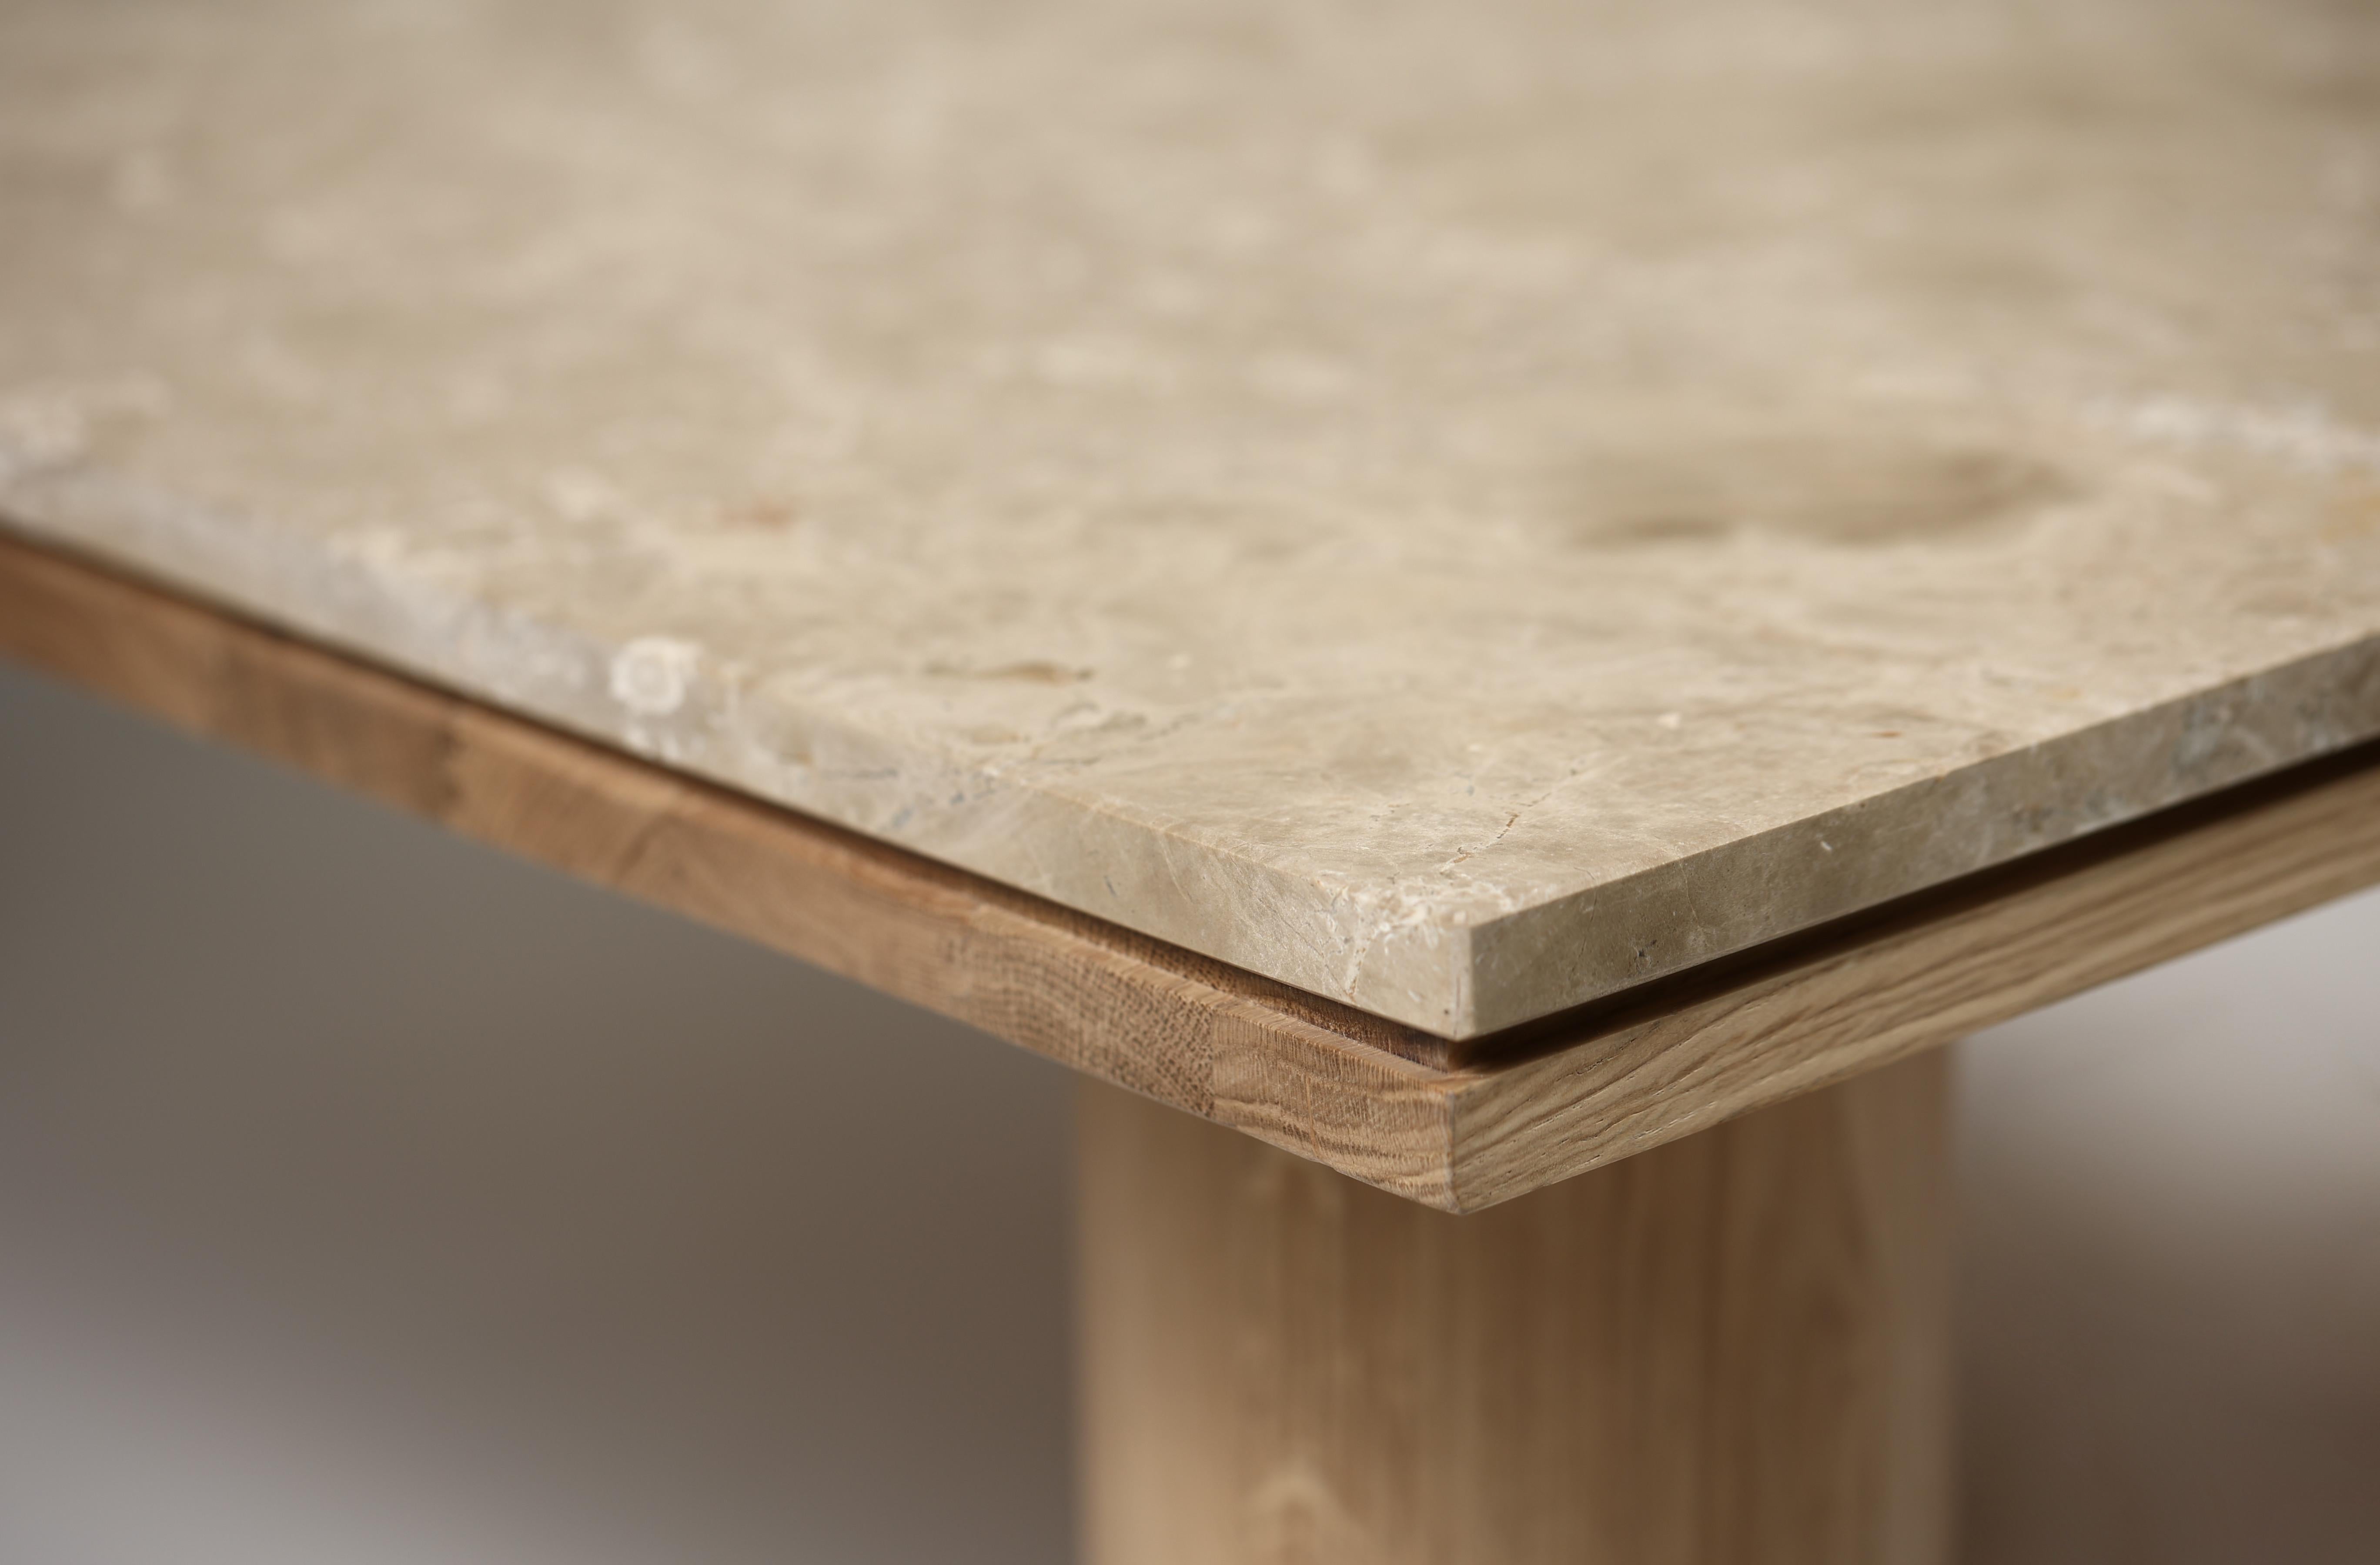 La table basse Eleg est l'un de nos produits les plus imposants qui parvient par l'absurde à conserver une élégance sans pareille.
 
Le plateau en marbre est collé à un plateau en bois, et des pieds tournés soutiennent l'ensemble luxueux.
